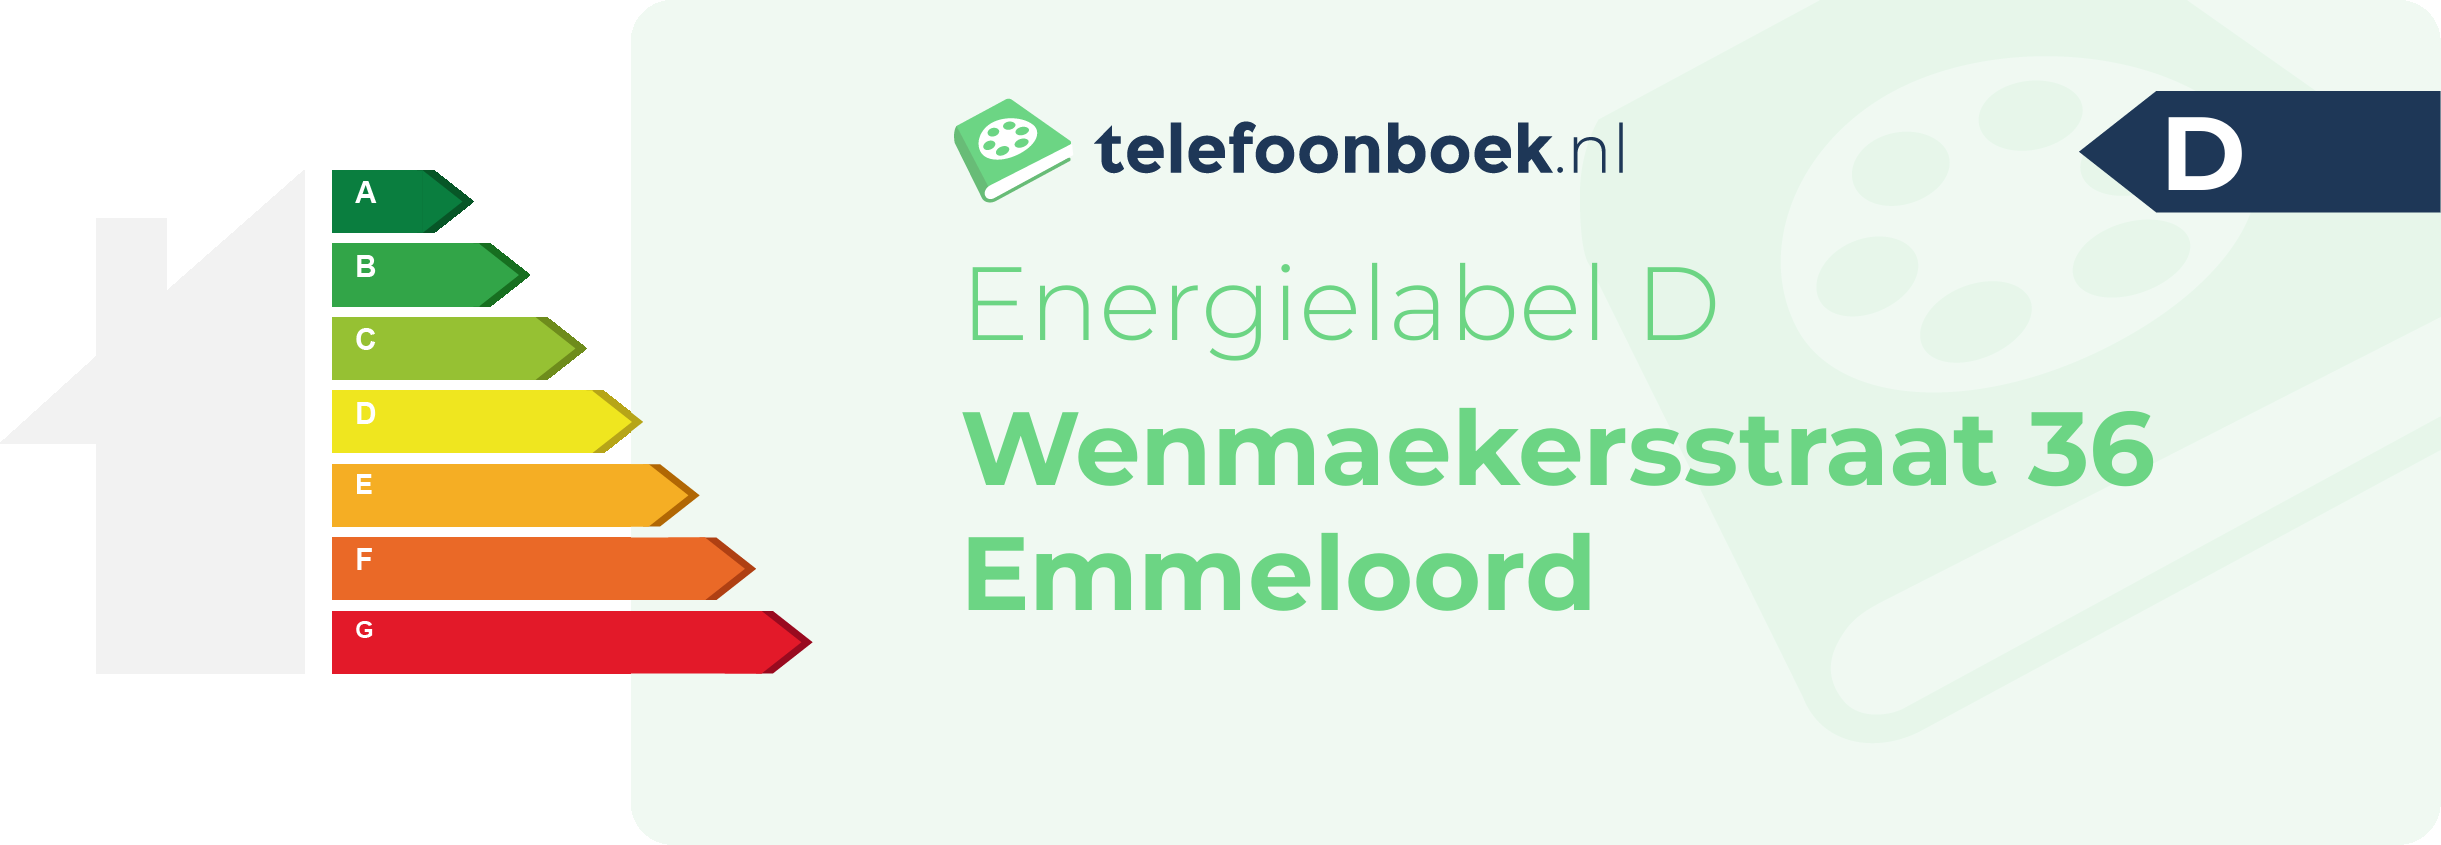 Energielabel Wenmaekersstraat 36 Emmeloord